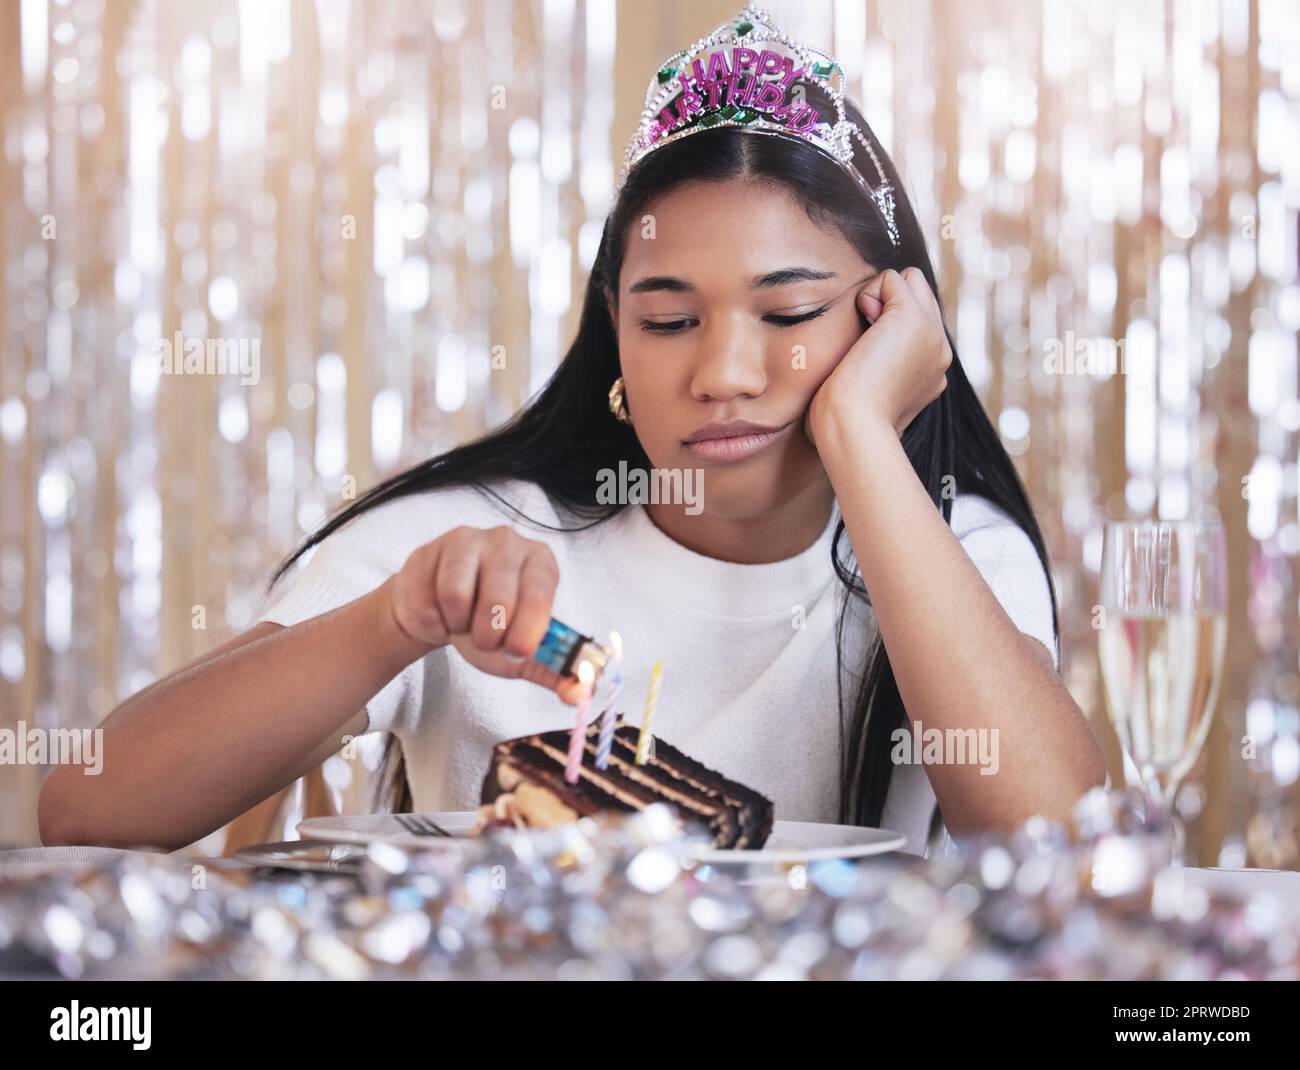 Traurige, depressive und wütende Frau bei der Geburtstagsfeier, während Kerzen auf Kuchen angezündet werden. Einsame, deprimierte und frustrierte Frau, die auf einer Party sitzt, versagt und einen Tisch mit Snack, Dekoration und Diadem serviert Stockfoto